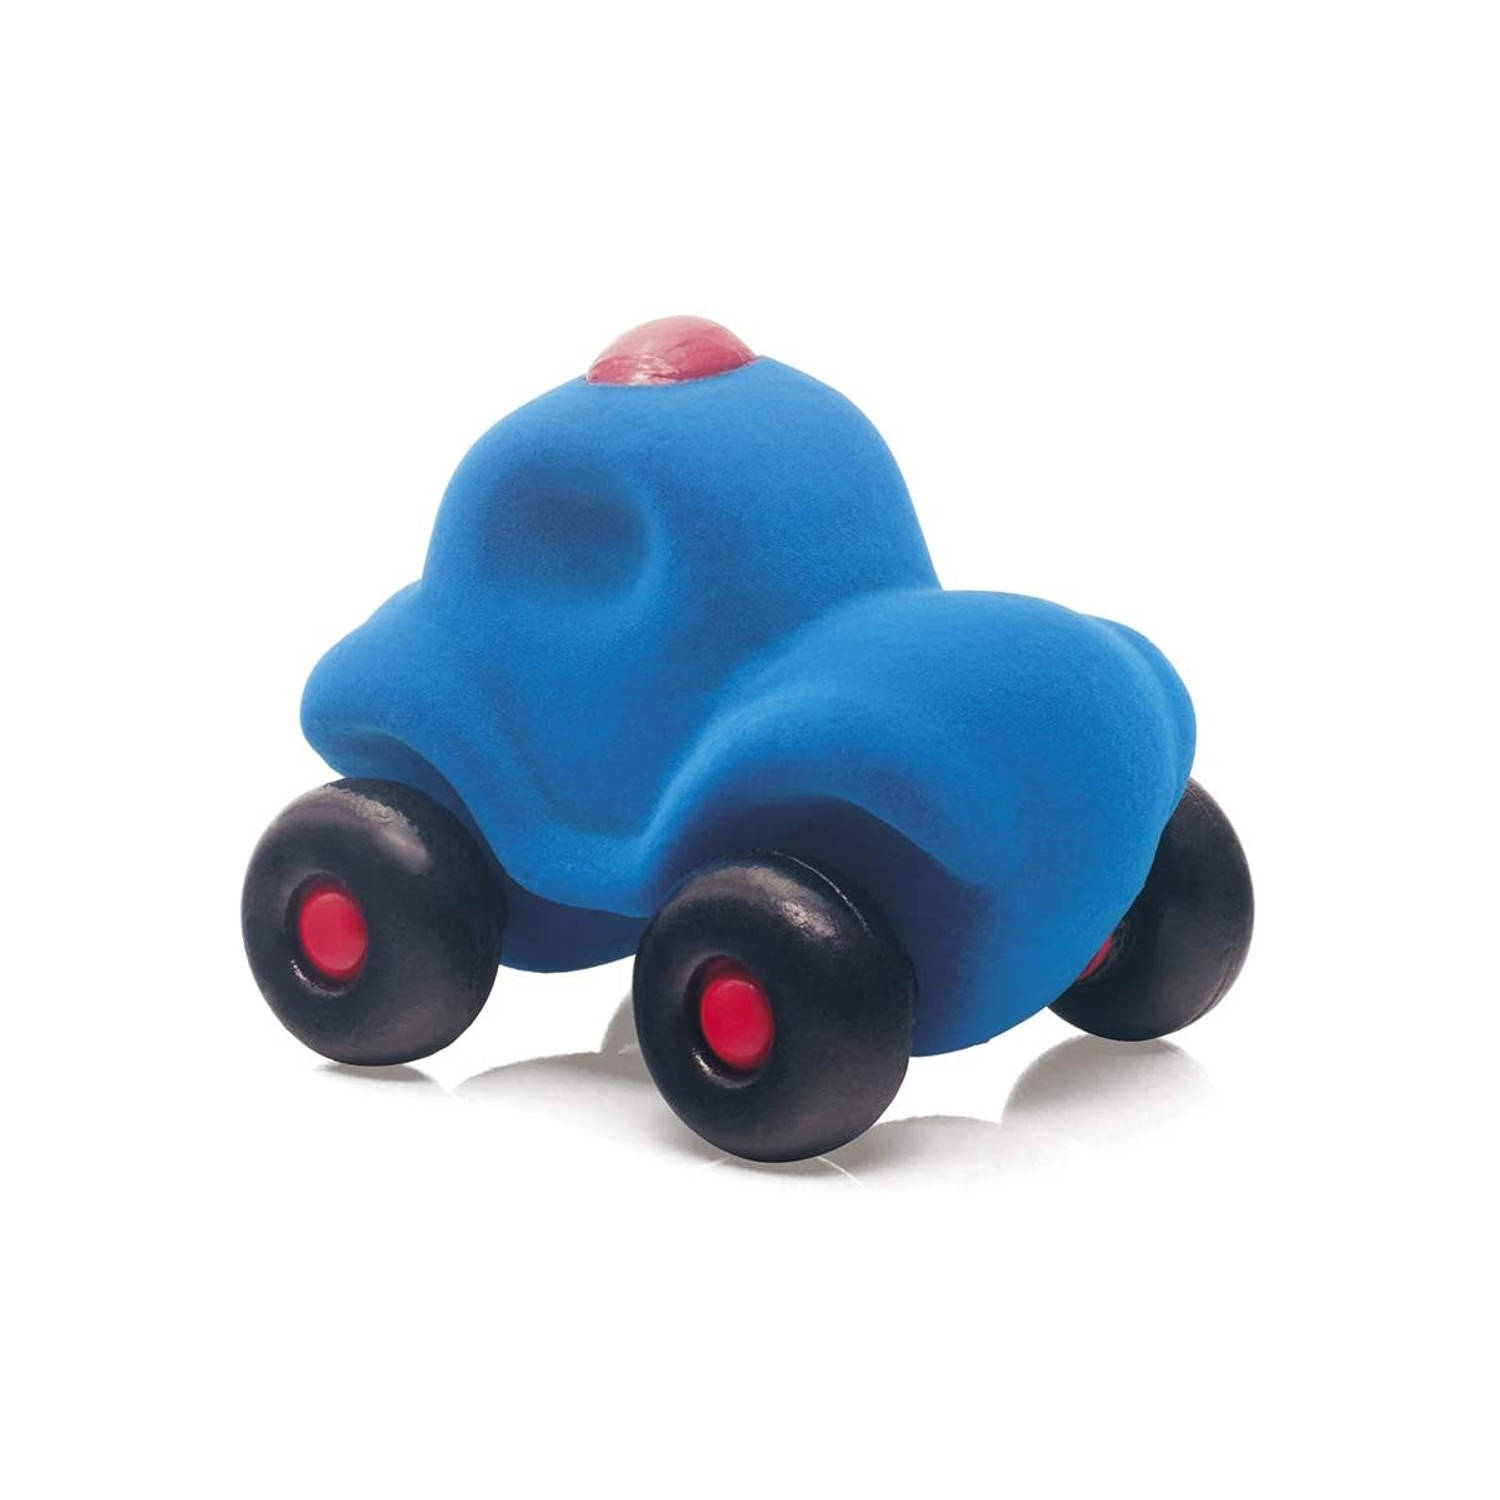 Rubbabu - Kleine politieauto blauw